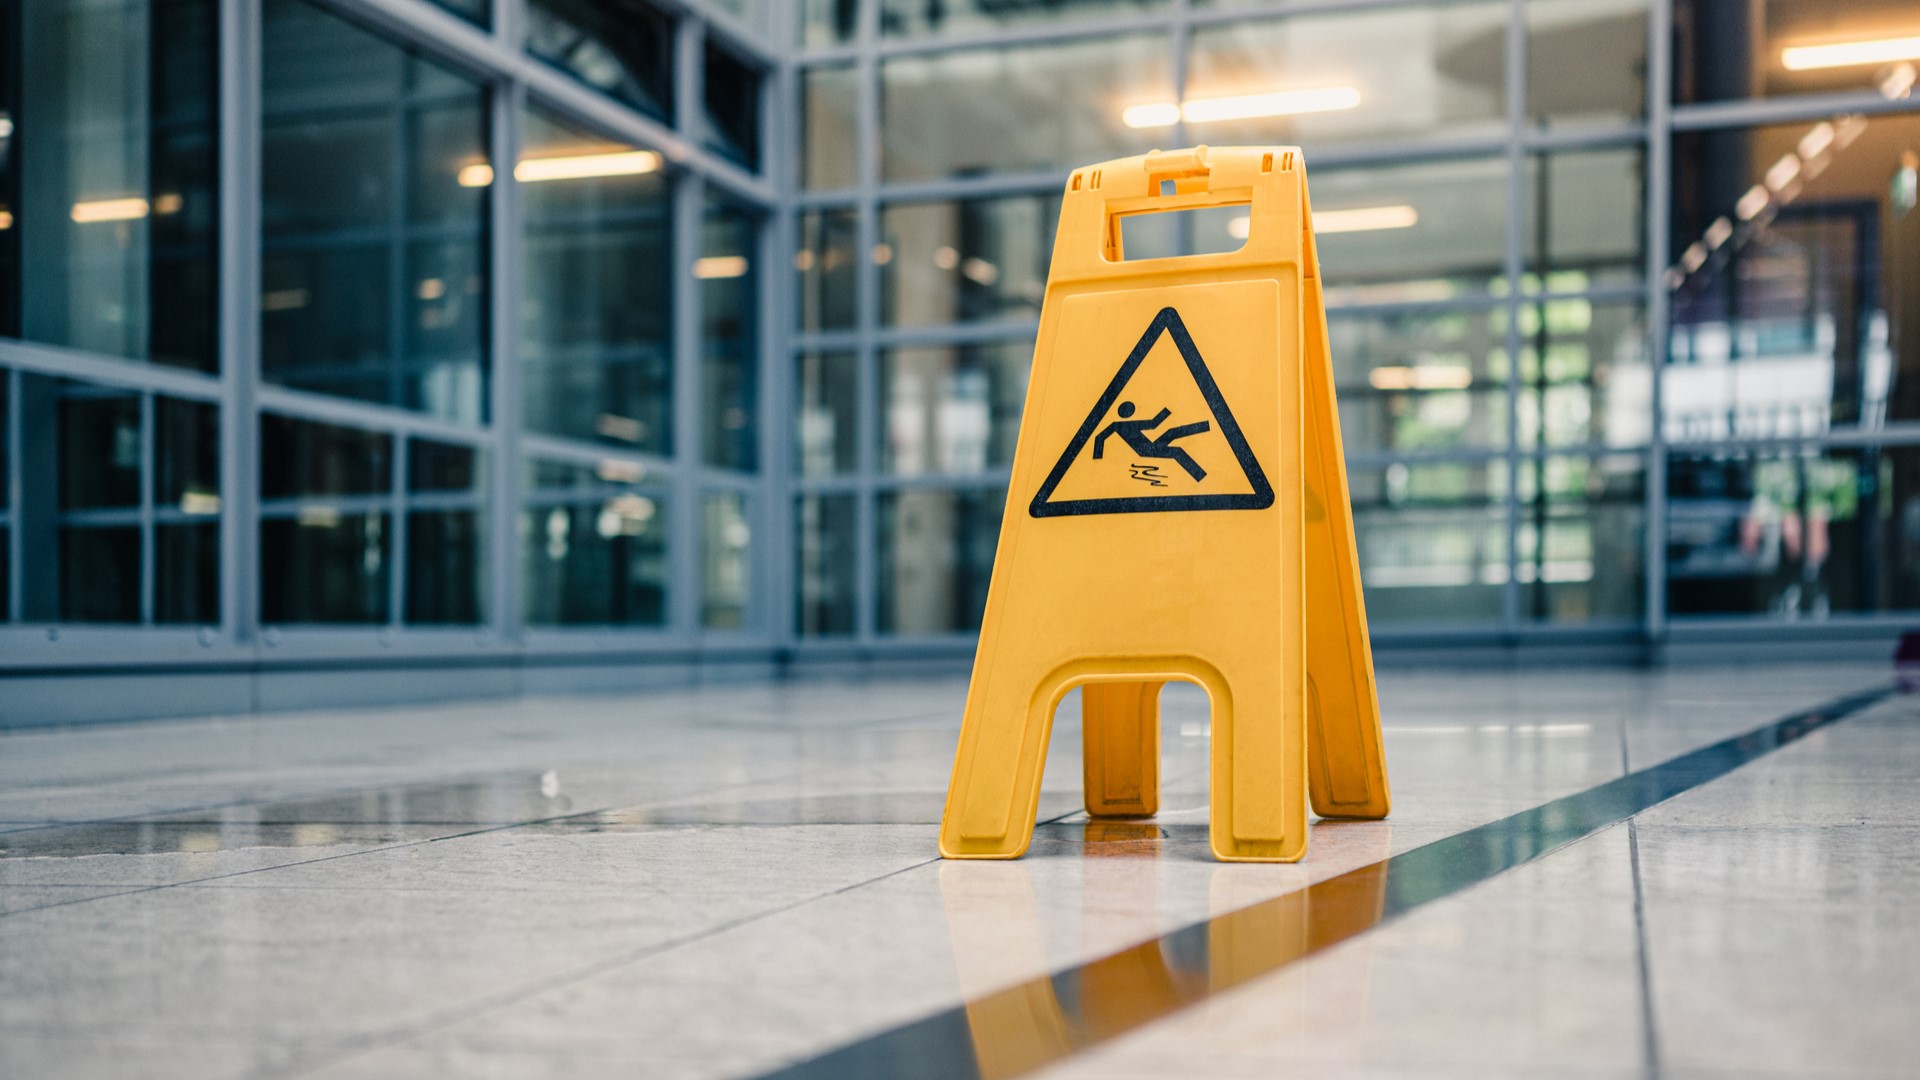 Wet floor warning sign